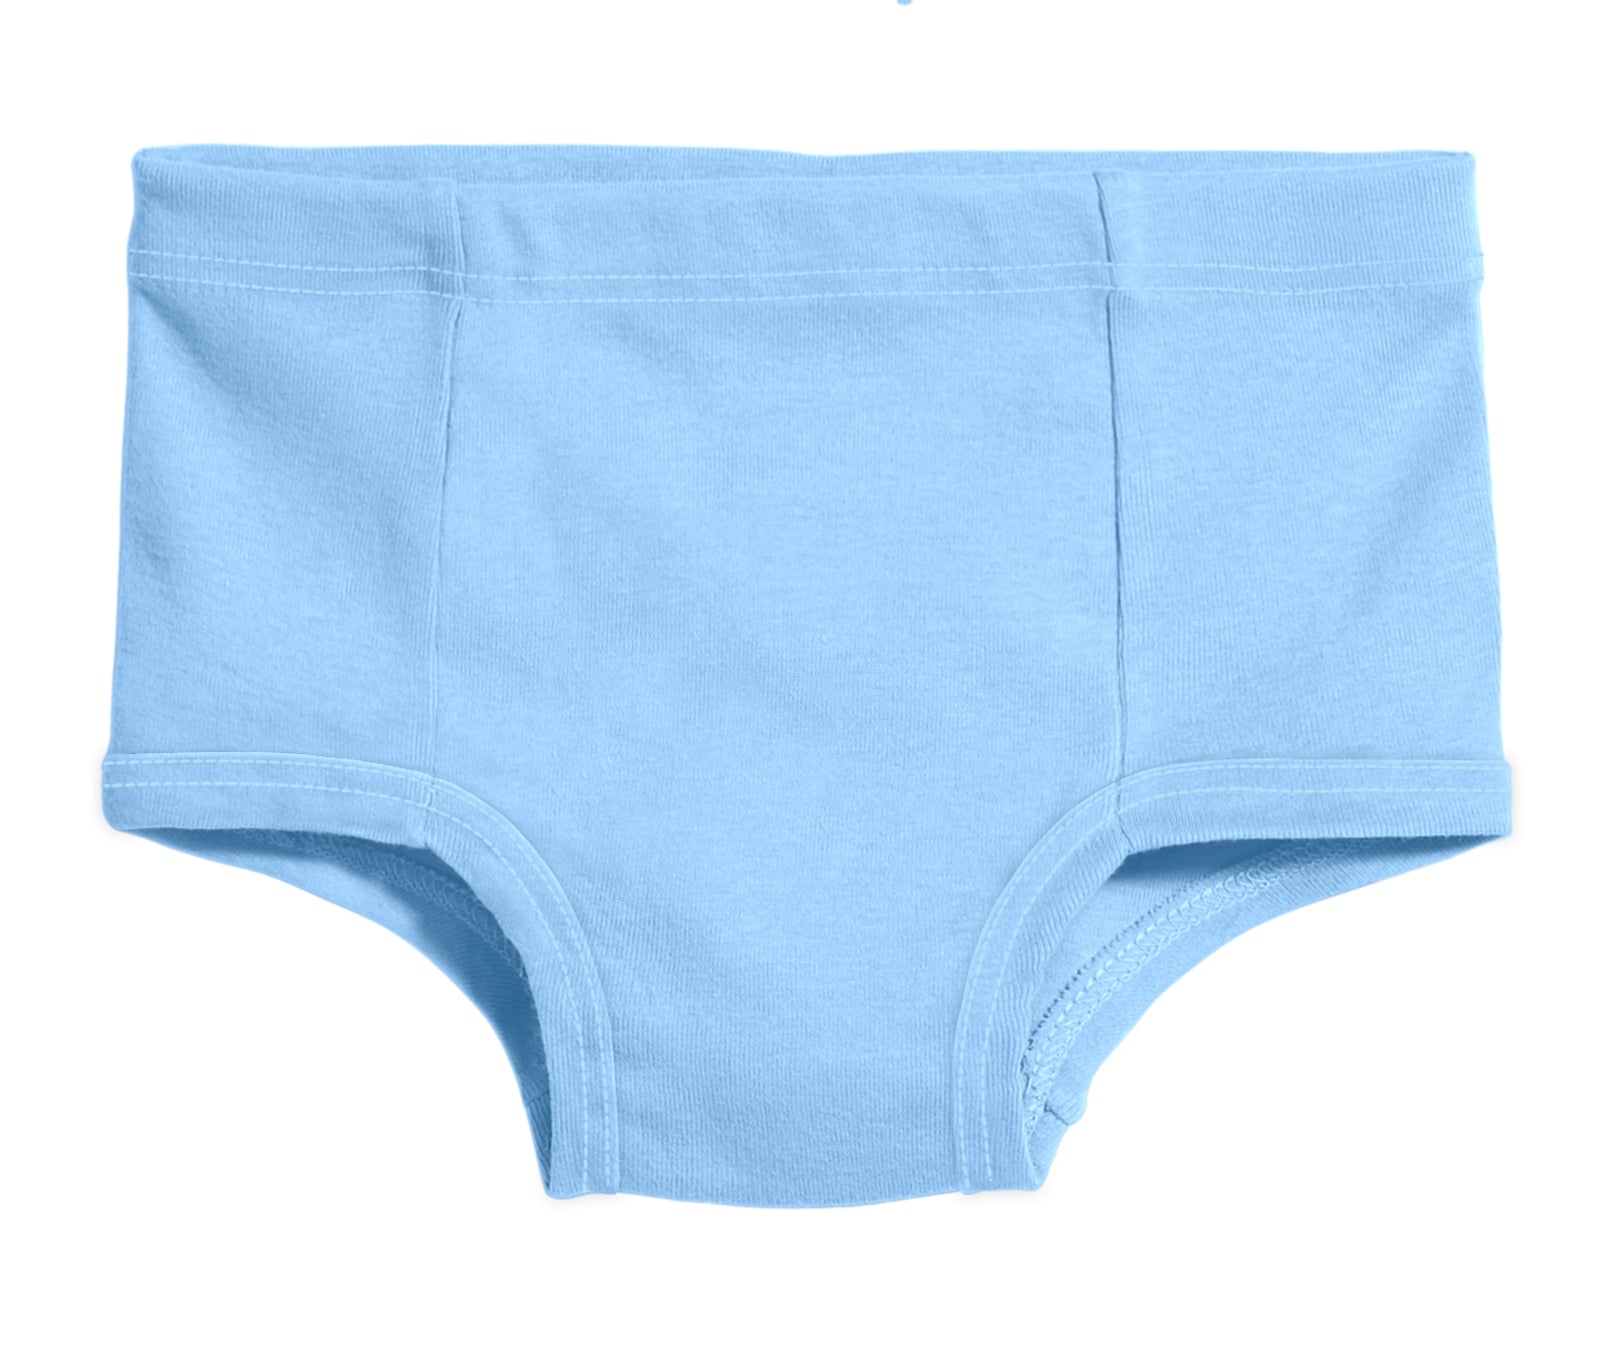 Buy Basic Super Soft Underwear